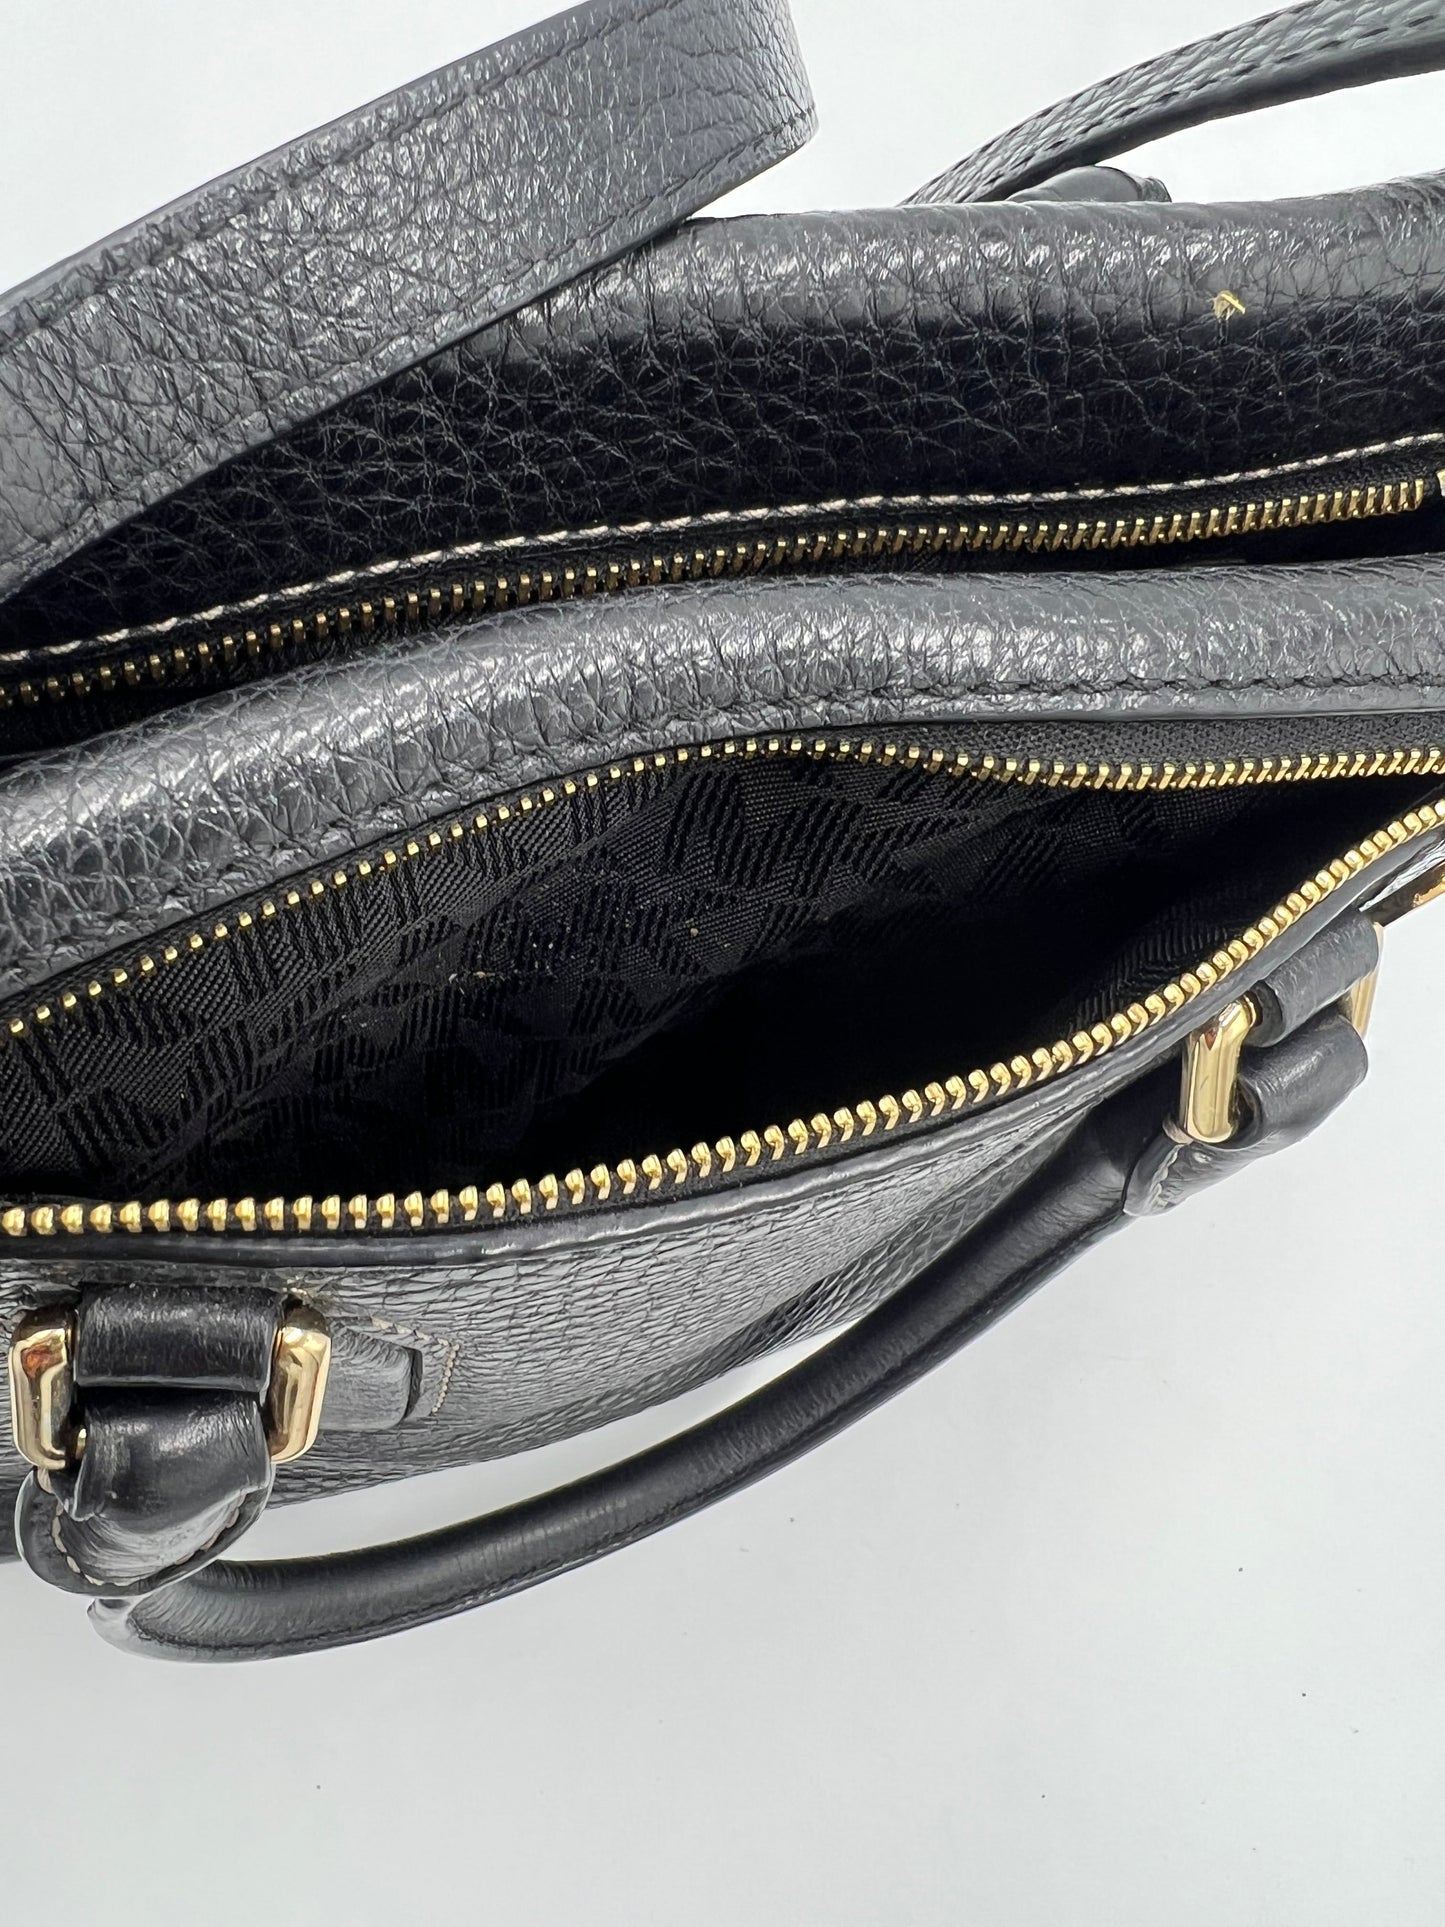 Michael Kors Pebbled Leather Handbag with Shoulder Strap